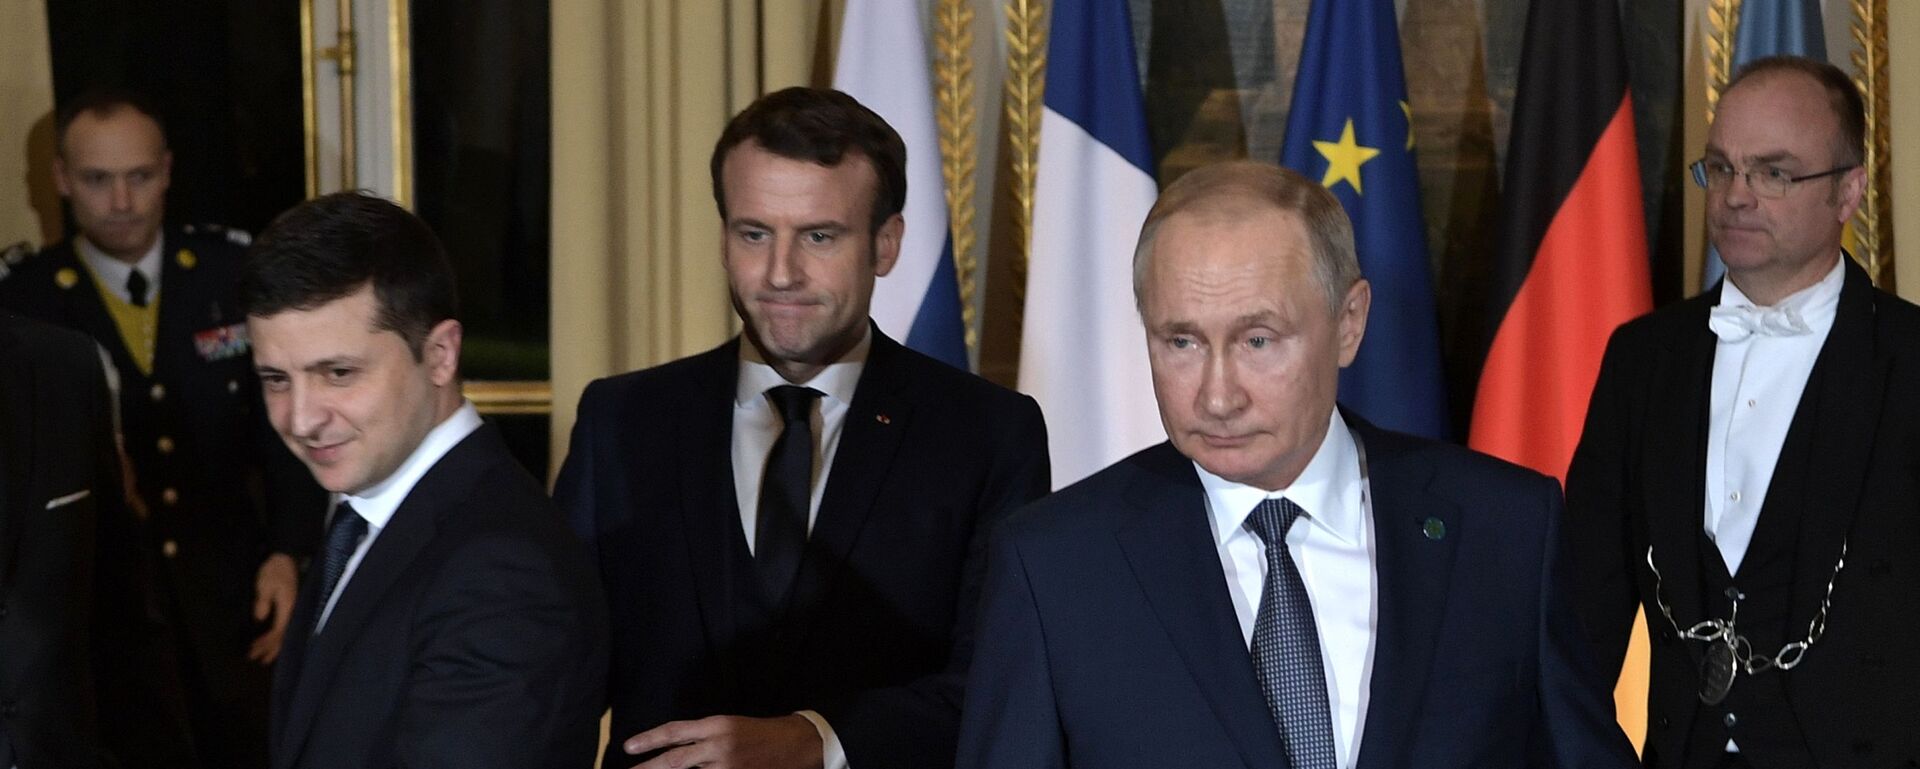  Vladimir Putin, Vladimir Zelensky và Tổng thống Pháp Emmanuel Macron ( cuộc gặp gỡ theo  “định dạng Normandy” (09.12.2019).  - Sputnik Việt Nam, 1920, 25.01.2023